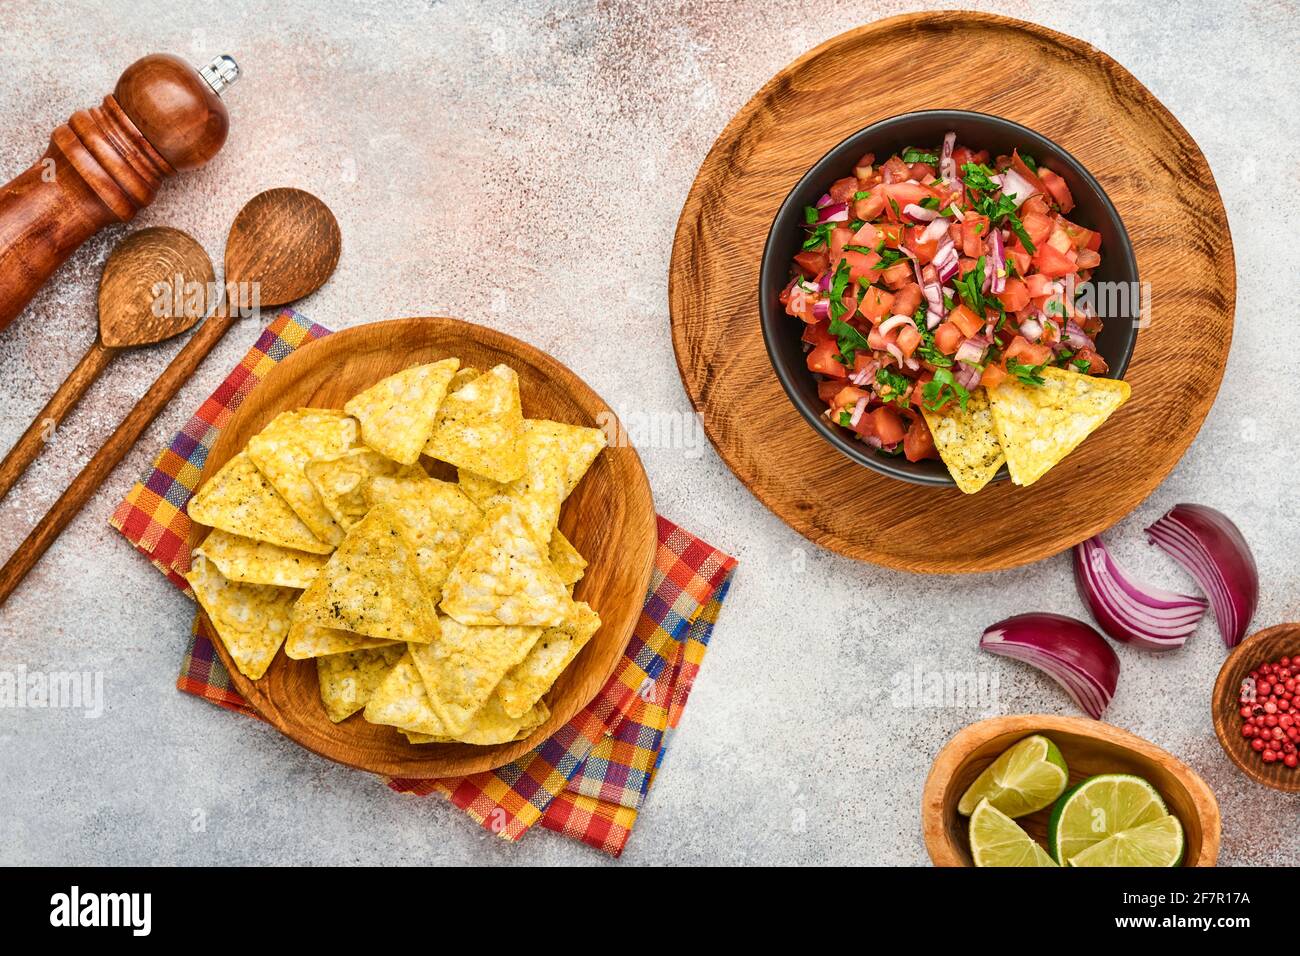 Sauce tomate mexicaine traditionnelle salsa avec nachos et ingrédients tomates, chili, ail, oignon sur fond de pierre d'ardoise légère. Concept de latin Am Banque D'Images